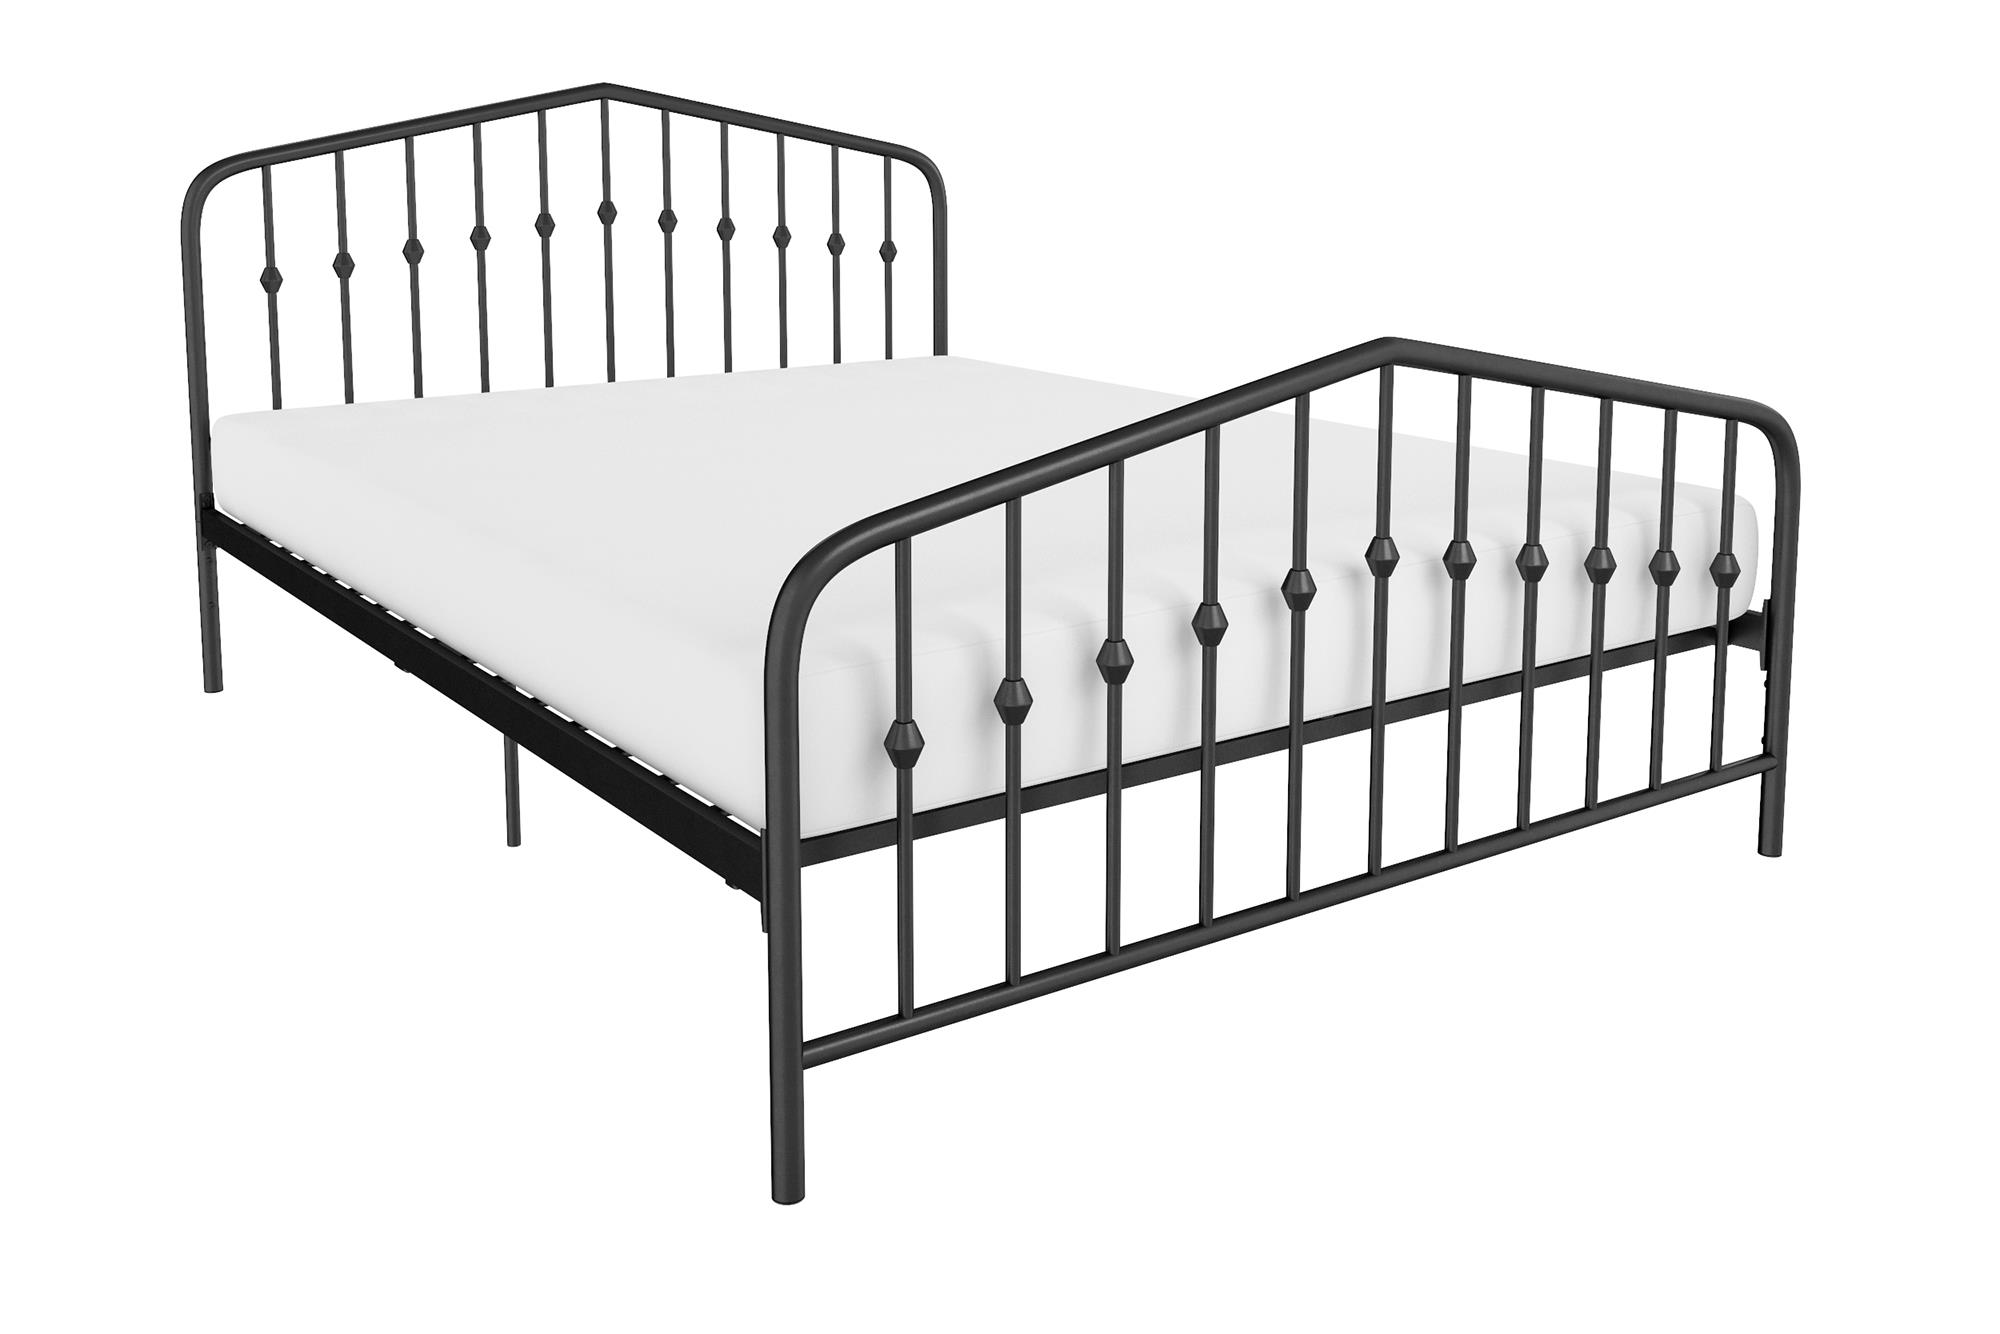 Novogratz Bushwick Metal Platform Bed and Adjustable Frame, Full, Black - image 4 of 19